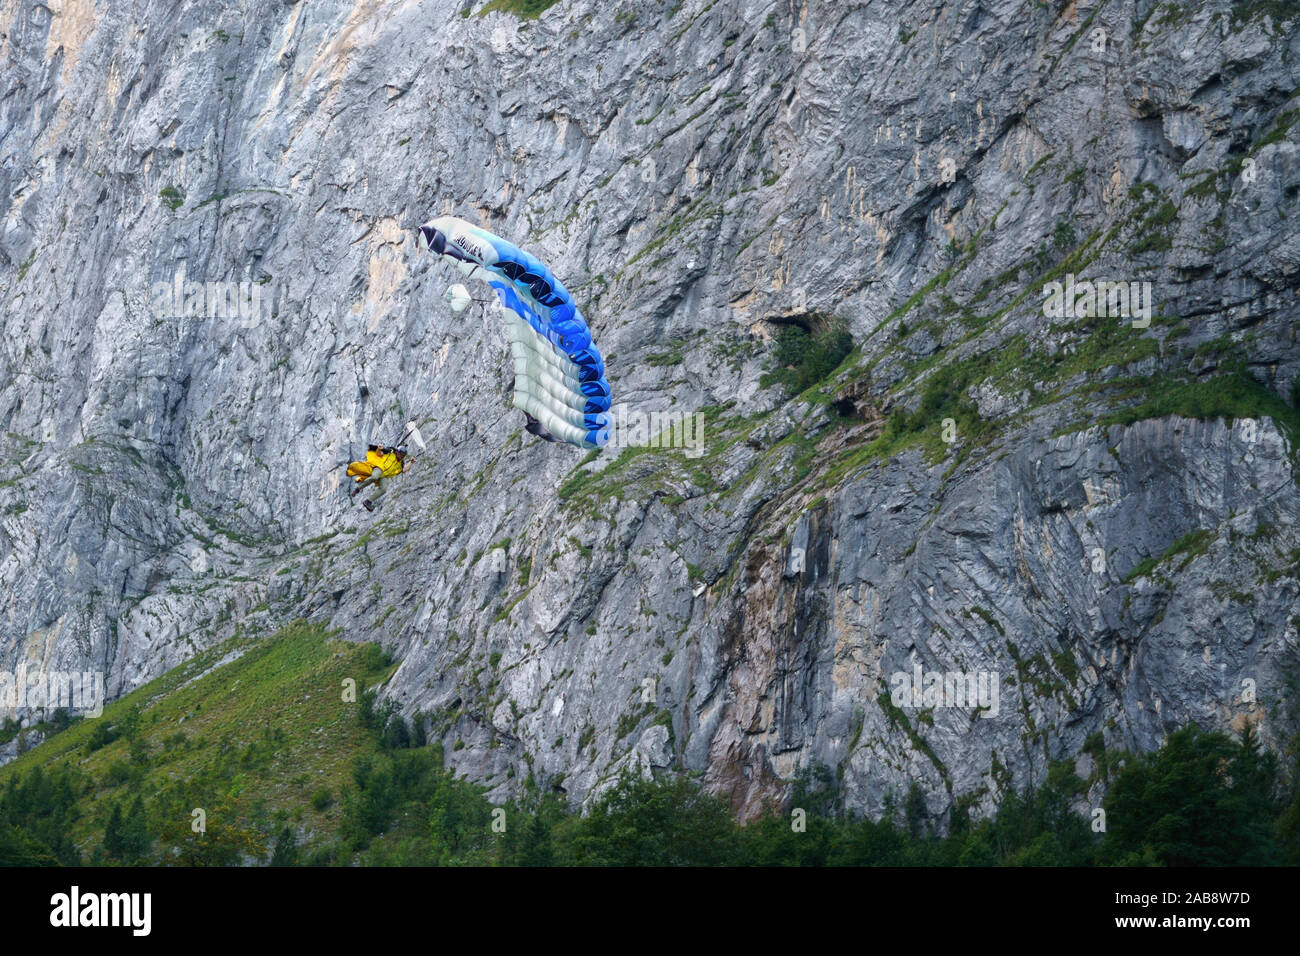 BASE Jump im Schweizer Dorf Lauterbrunnen, Kanton Bern, Schweiz. Lauterbrunnen mit seinen spektakulären Cliffs ist ein Mekka für Wingsuit Fliegen. Stockfoto